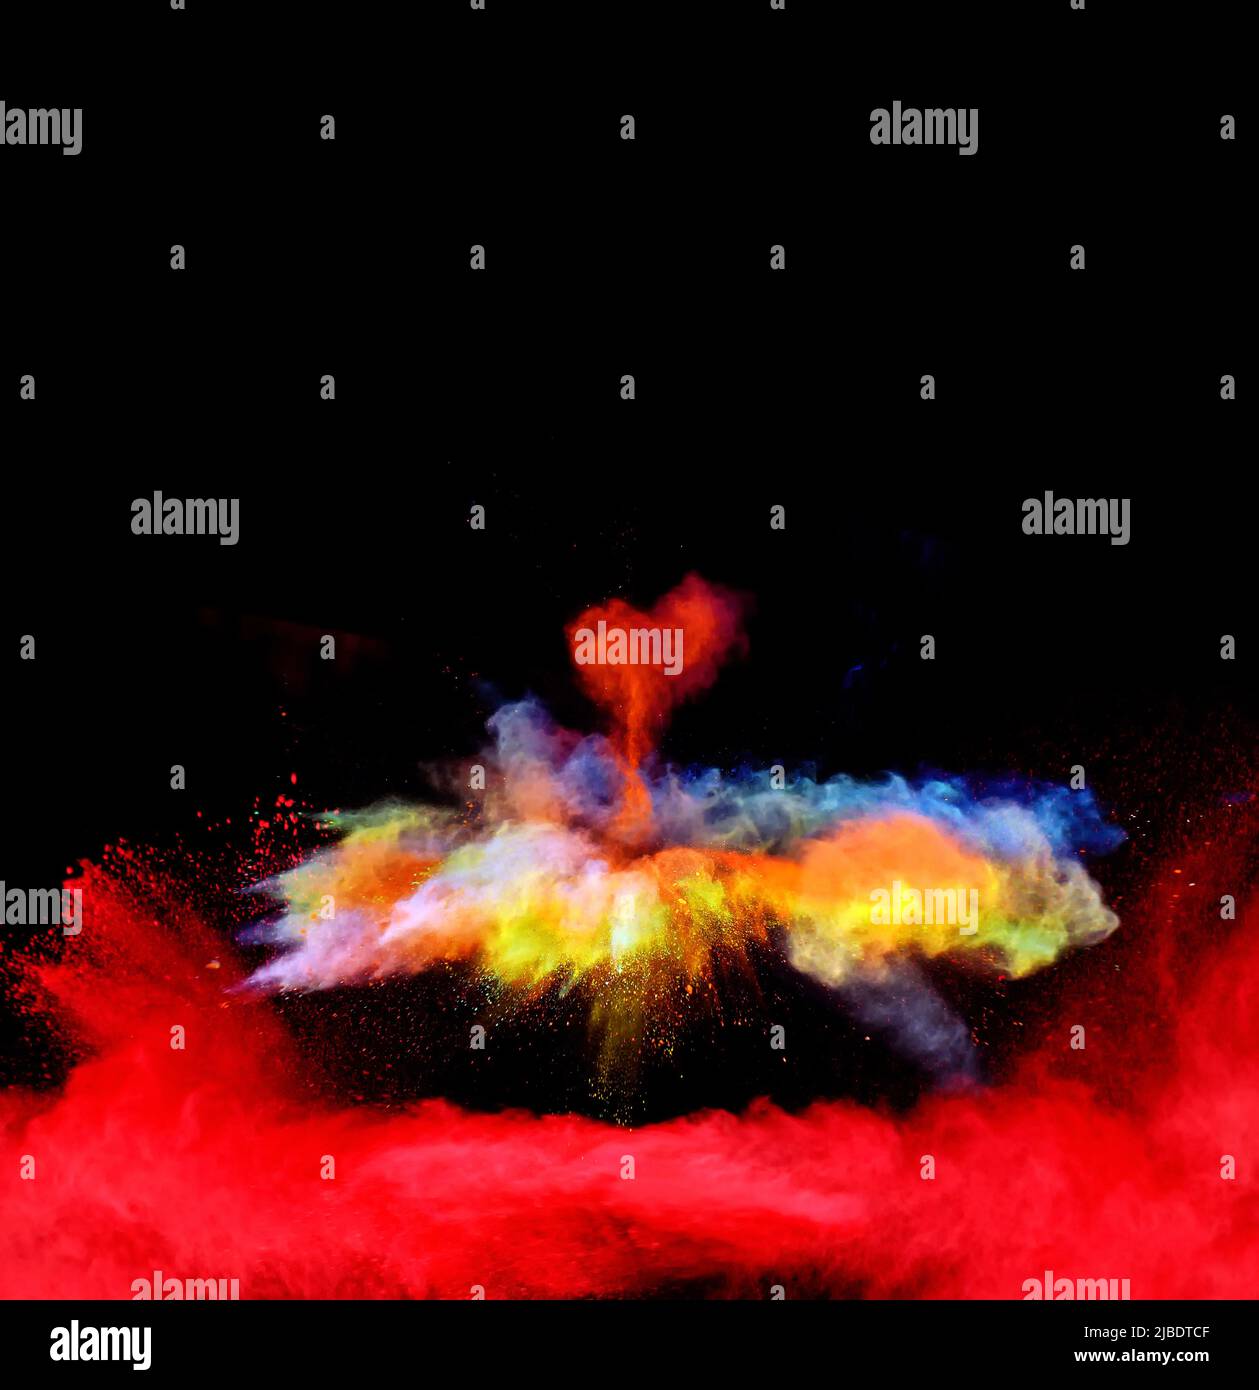 Varie forme multicolore di vernice in polvere esplodono di fronte a uno sfondo nero dando via fantastiche nuvole esplosive di vernice in polvere colorata vivida Foto Stock